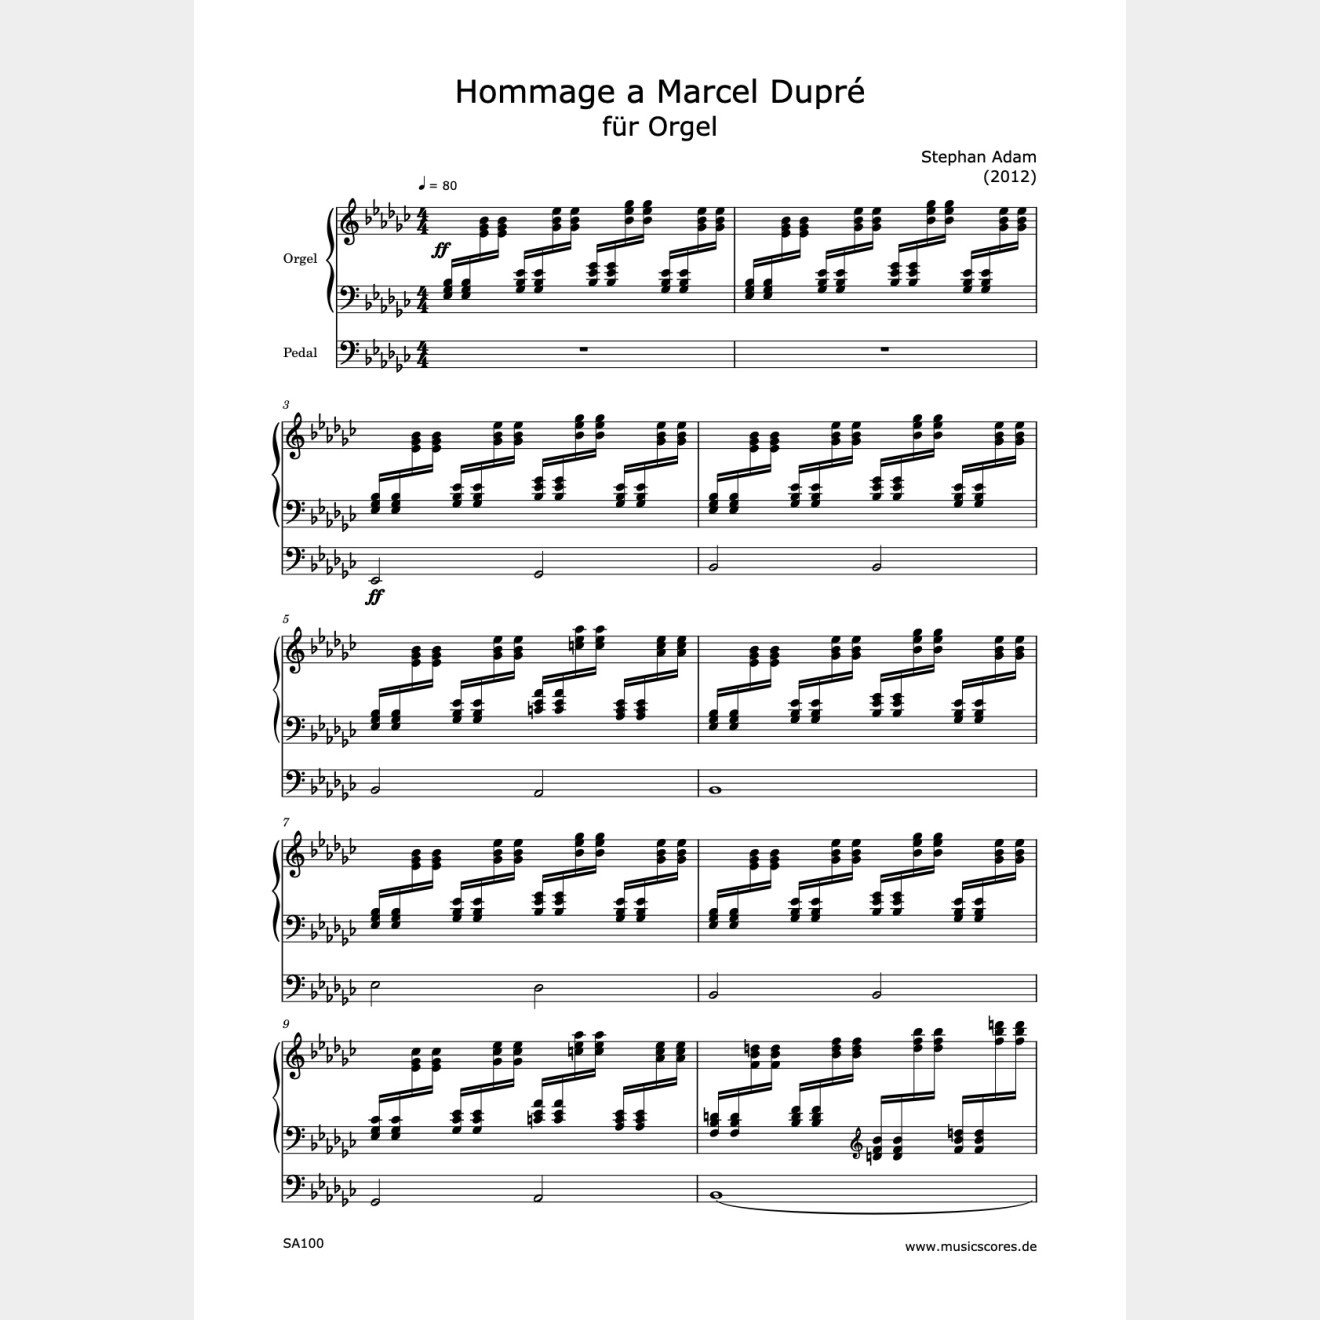 Hommage a Marcel Dupré für Orgel, 6'